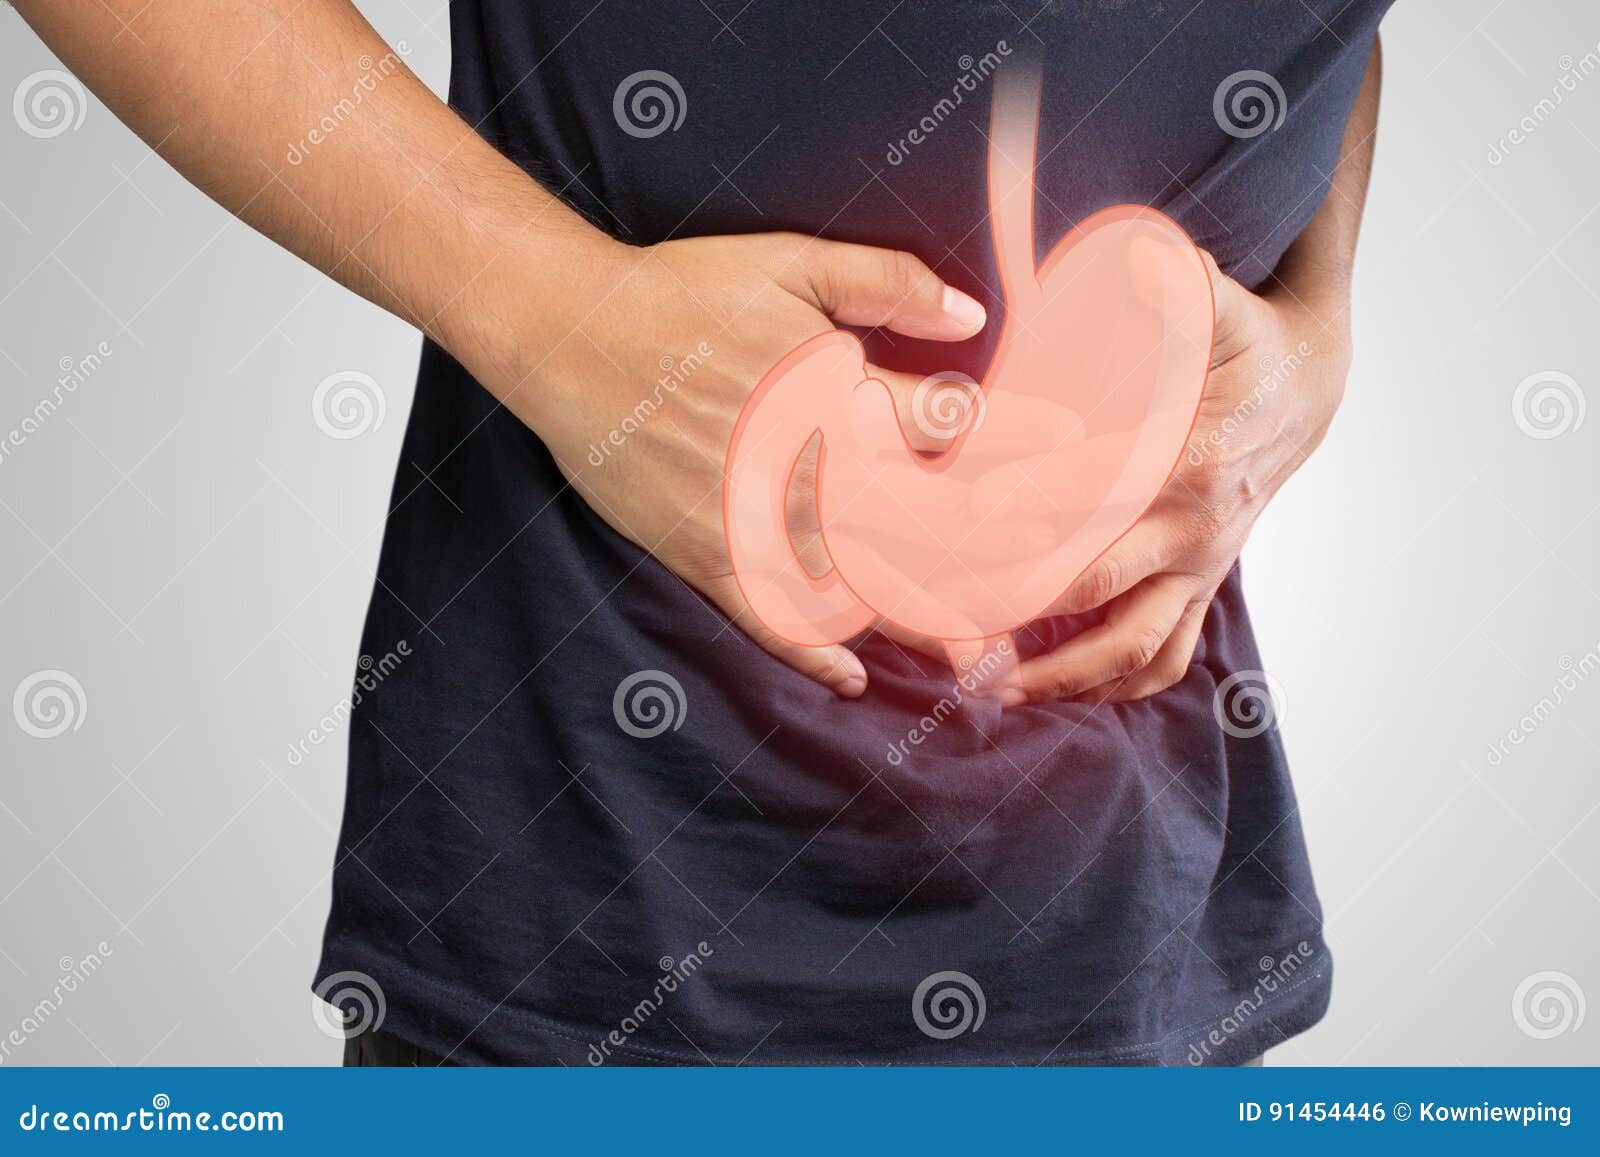 human gastritis, men stomach problem concept